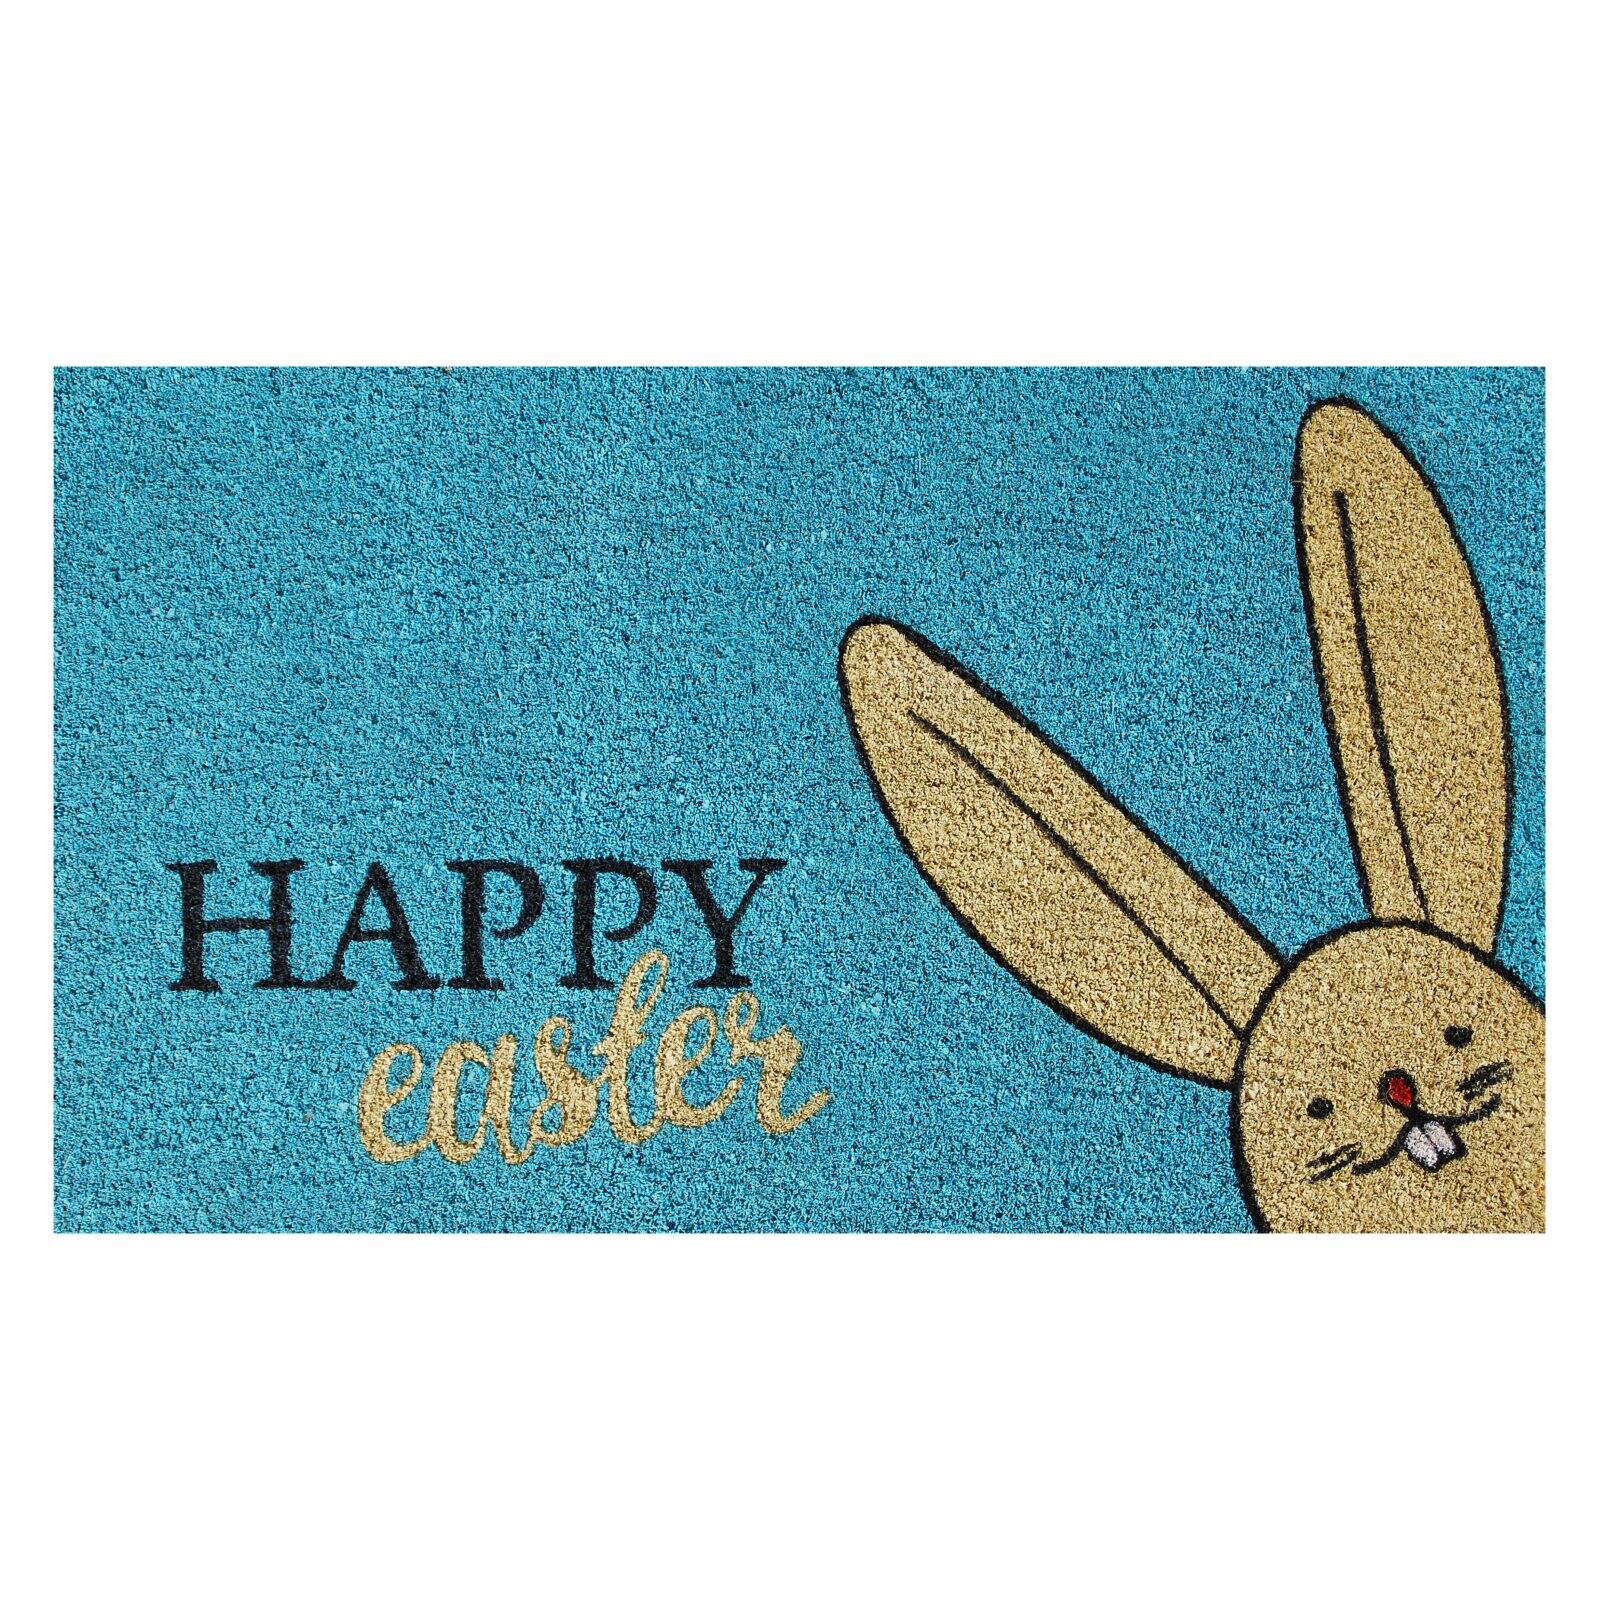 Calloway Mills Happy Easter Outdoor Doormat - image 1 of 2